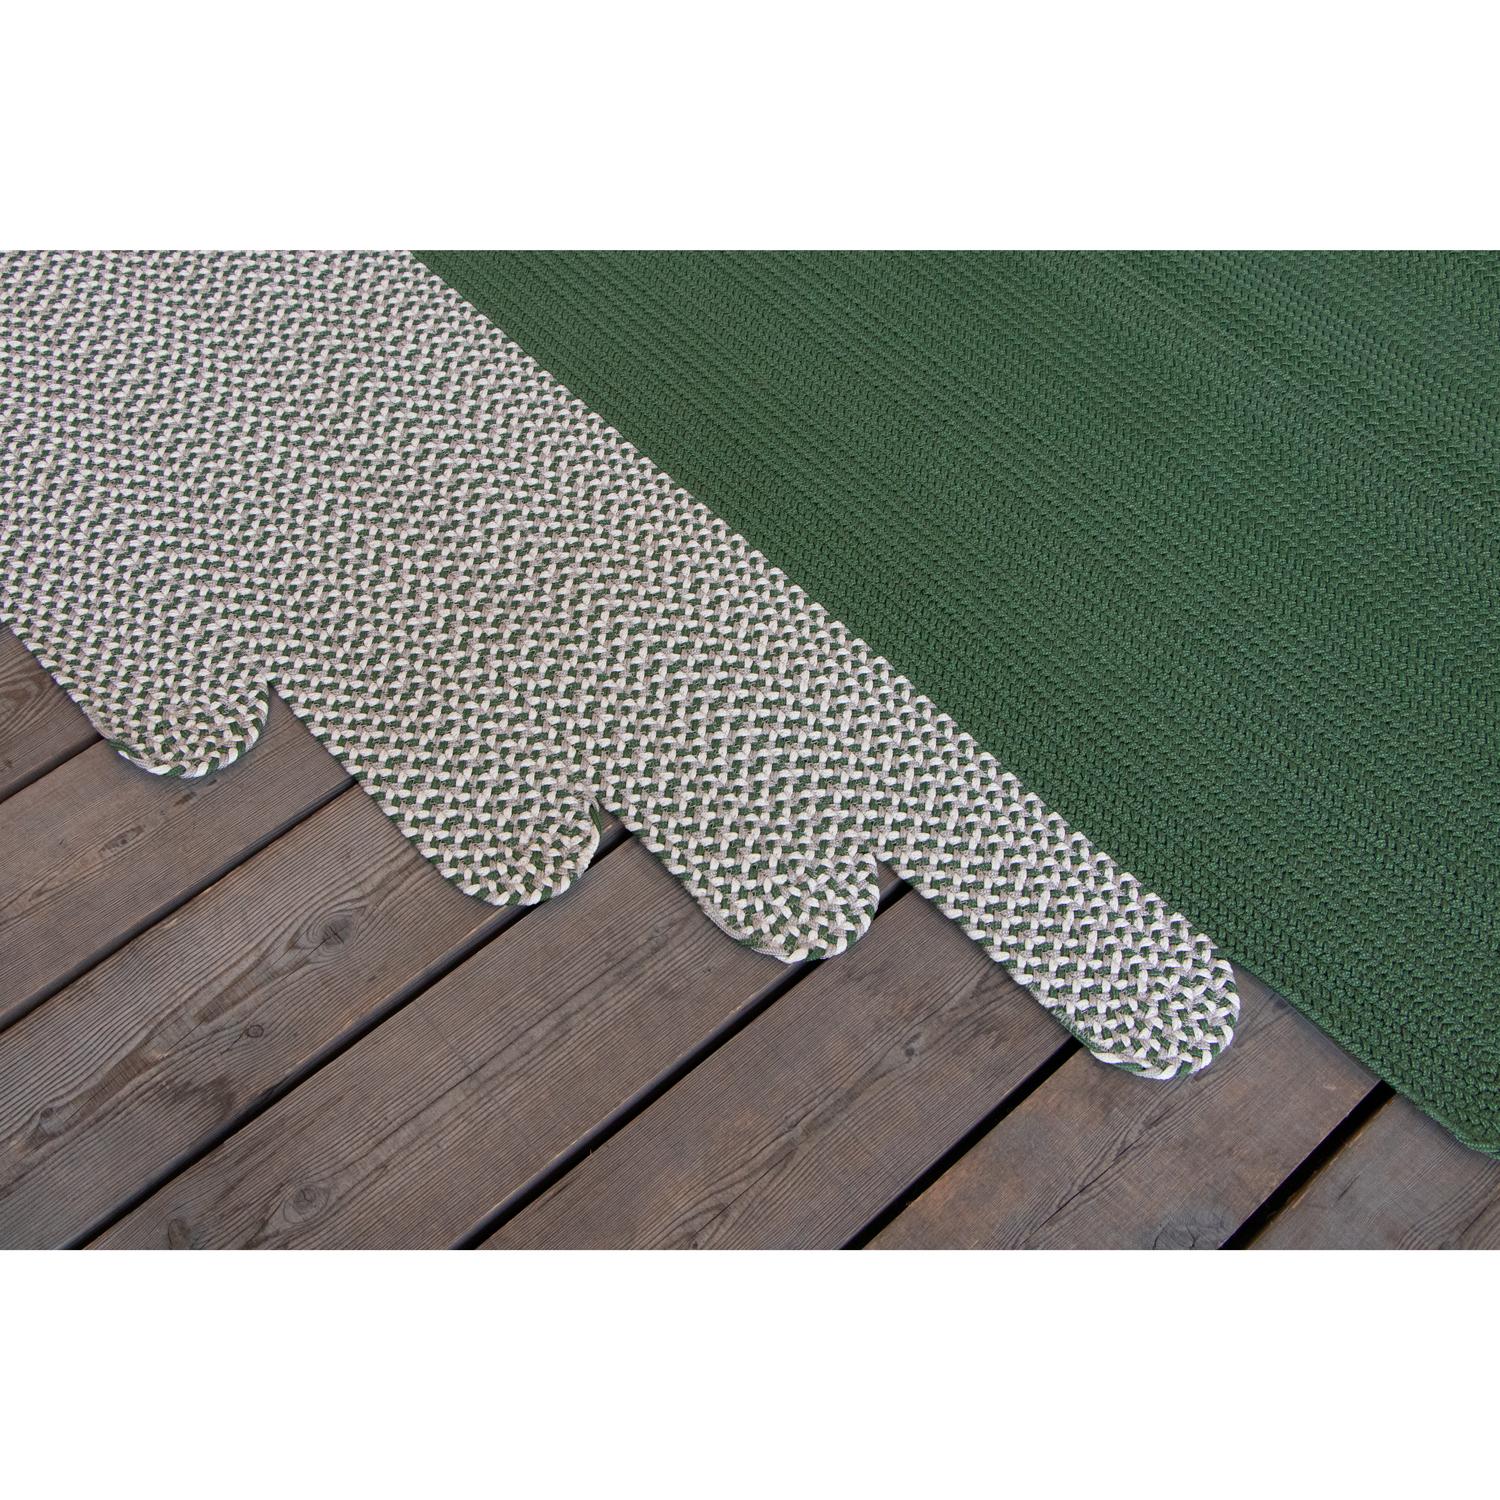 Other Tappeto foglia outdoor verde grigio design italiano Deanna Comellini 176x300cm For Sale